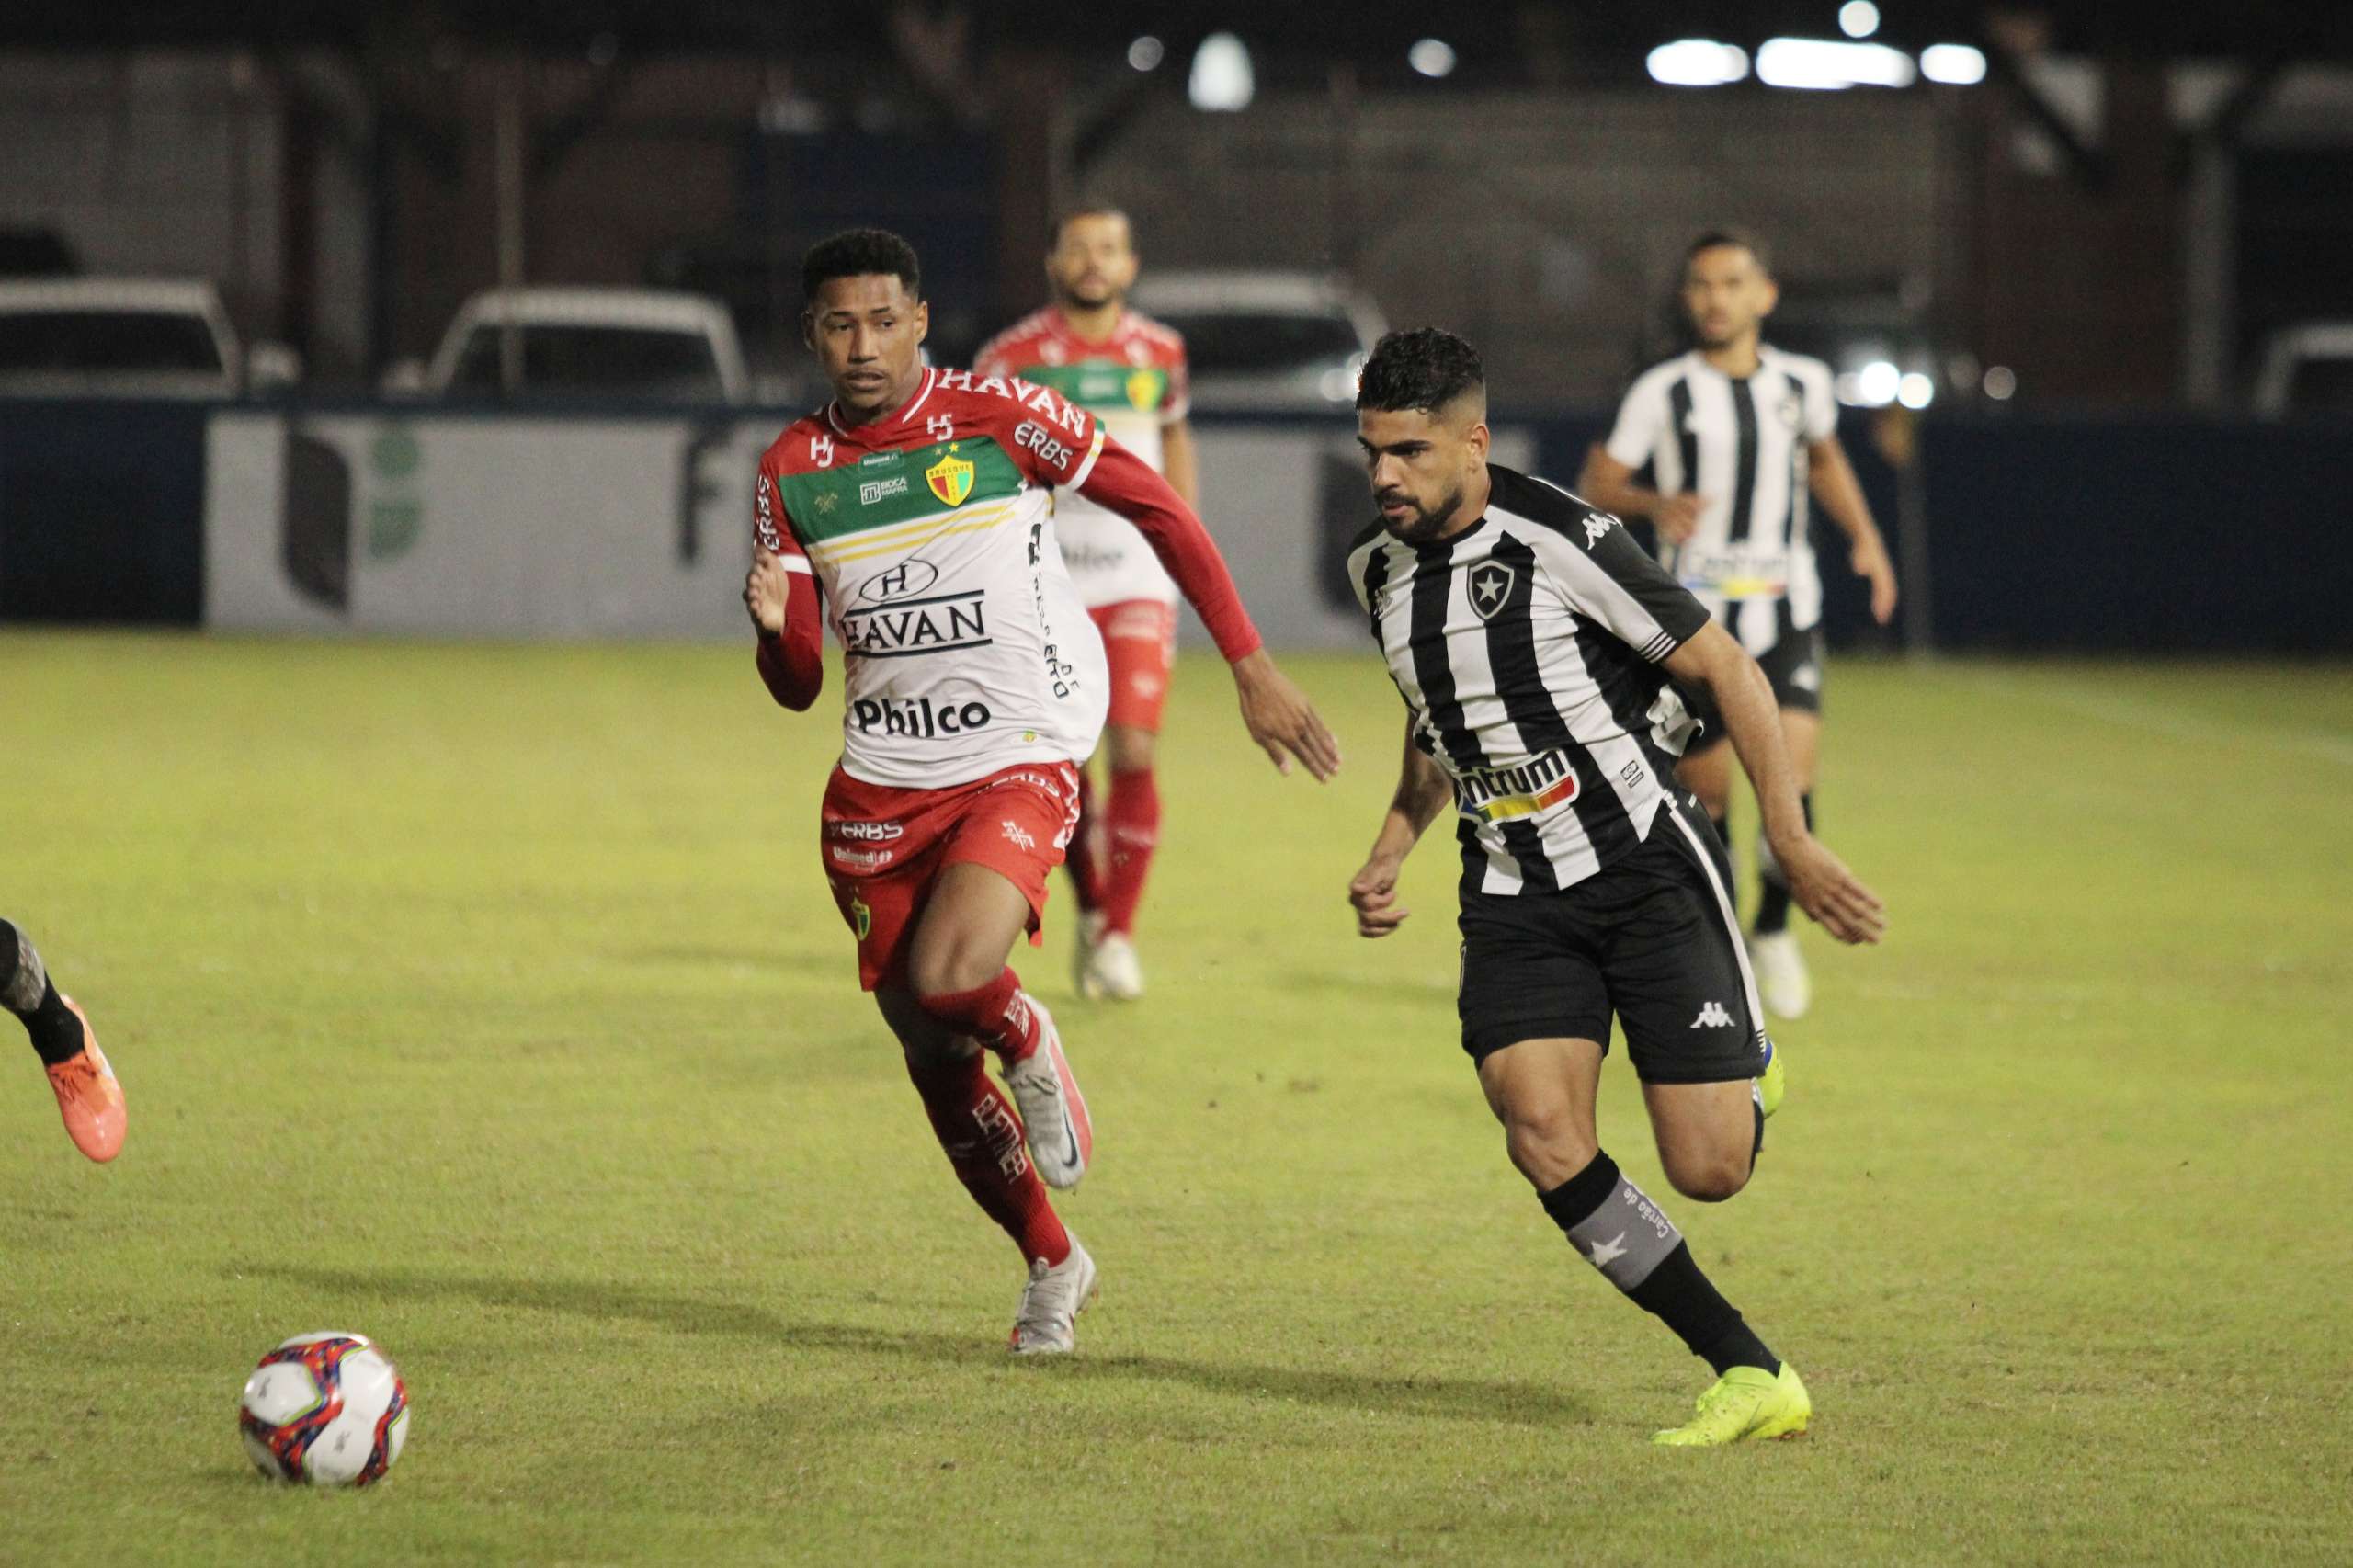 Brusque-SC 2 x 1 Botafogo-RJ –  Artilheiro marca no final, derruba Botafogo e garante o Brusque